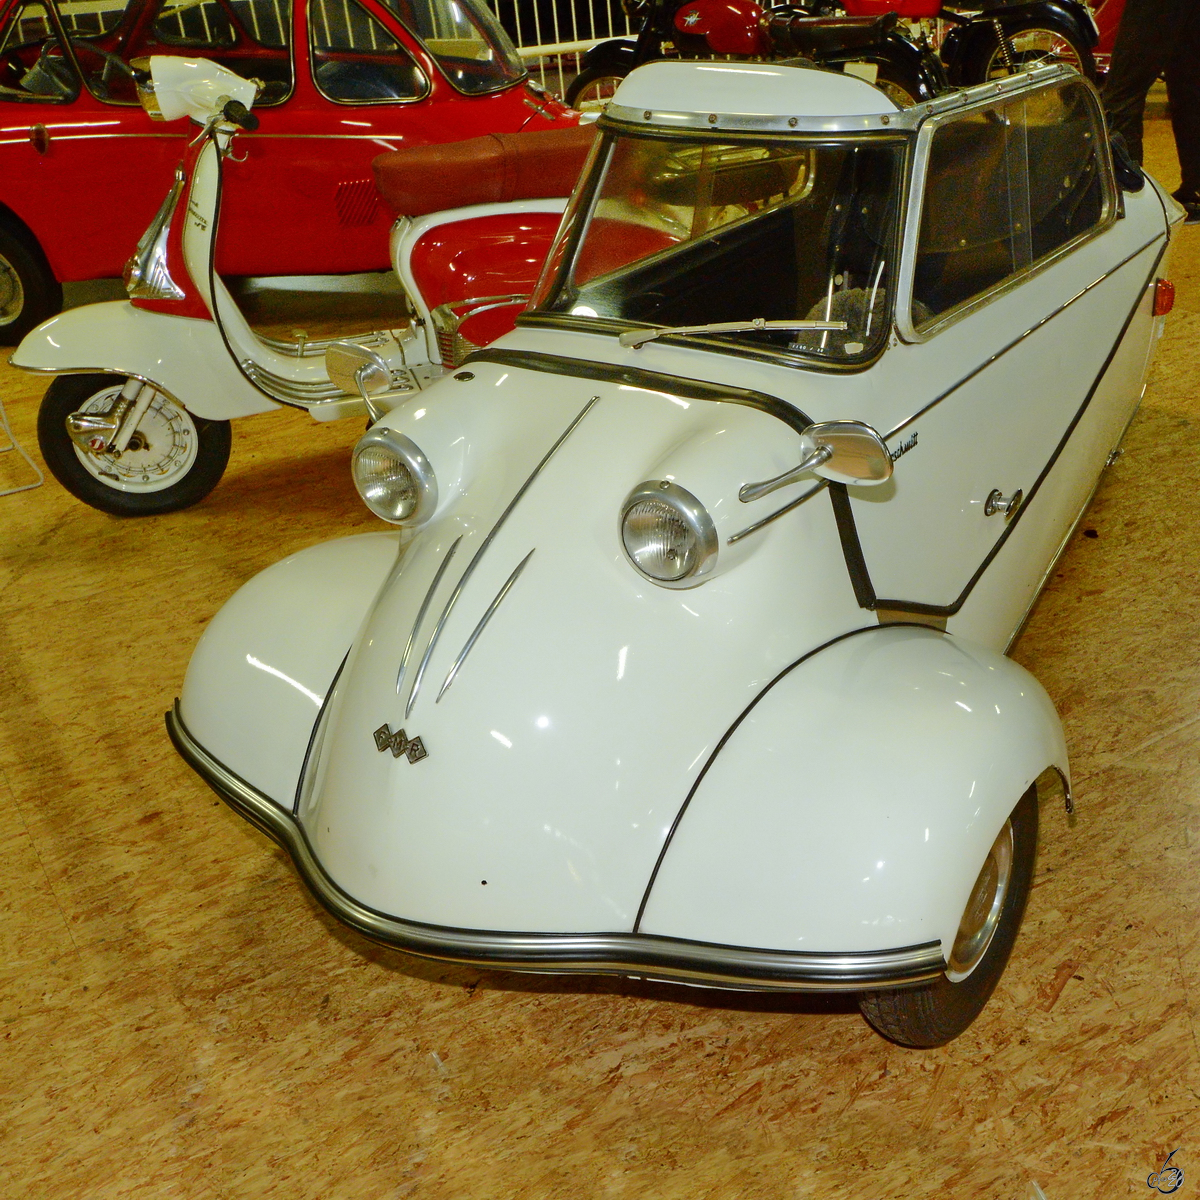 Dieser 1955 gebaute Messerschmitt KR 200 war im Dezember 2014 im Auto- und Technikmuseum Sinsheim zu bewundern.